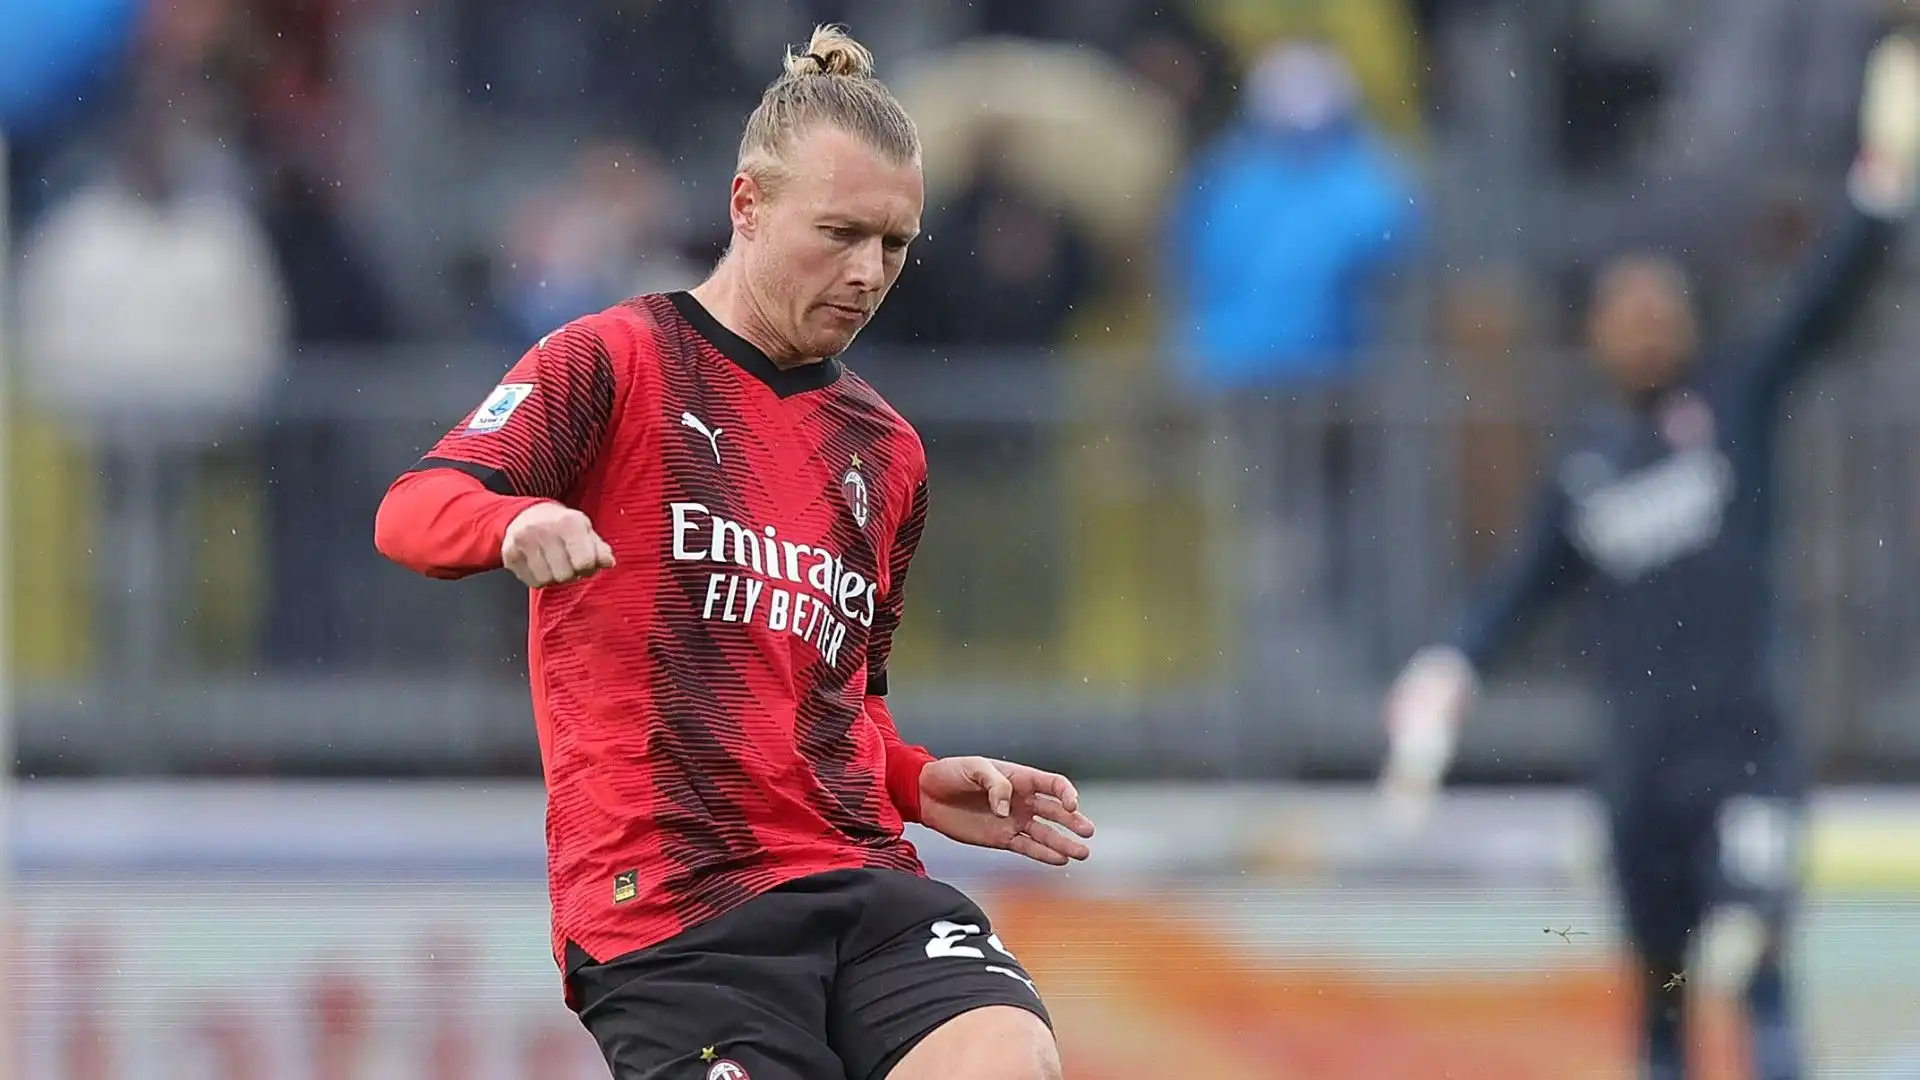 Complessivamente, Kjaer ha saltato 10 partite in questa stagione tra Milan e nazionale danese